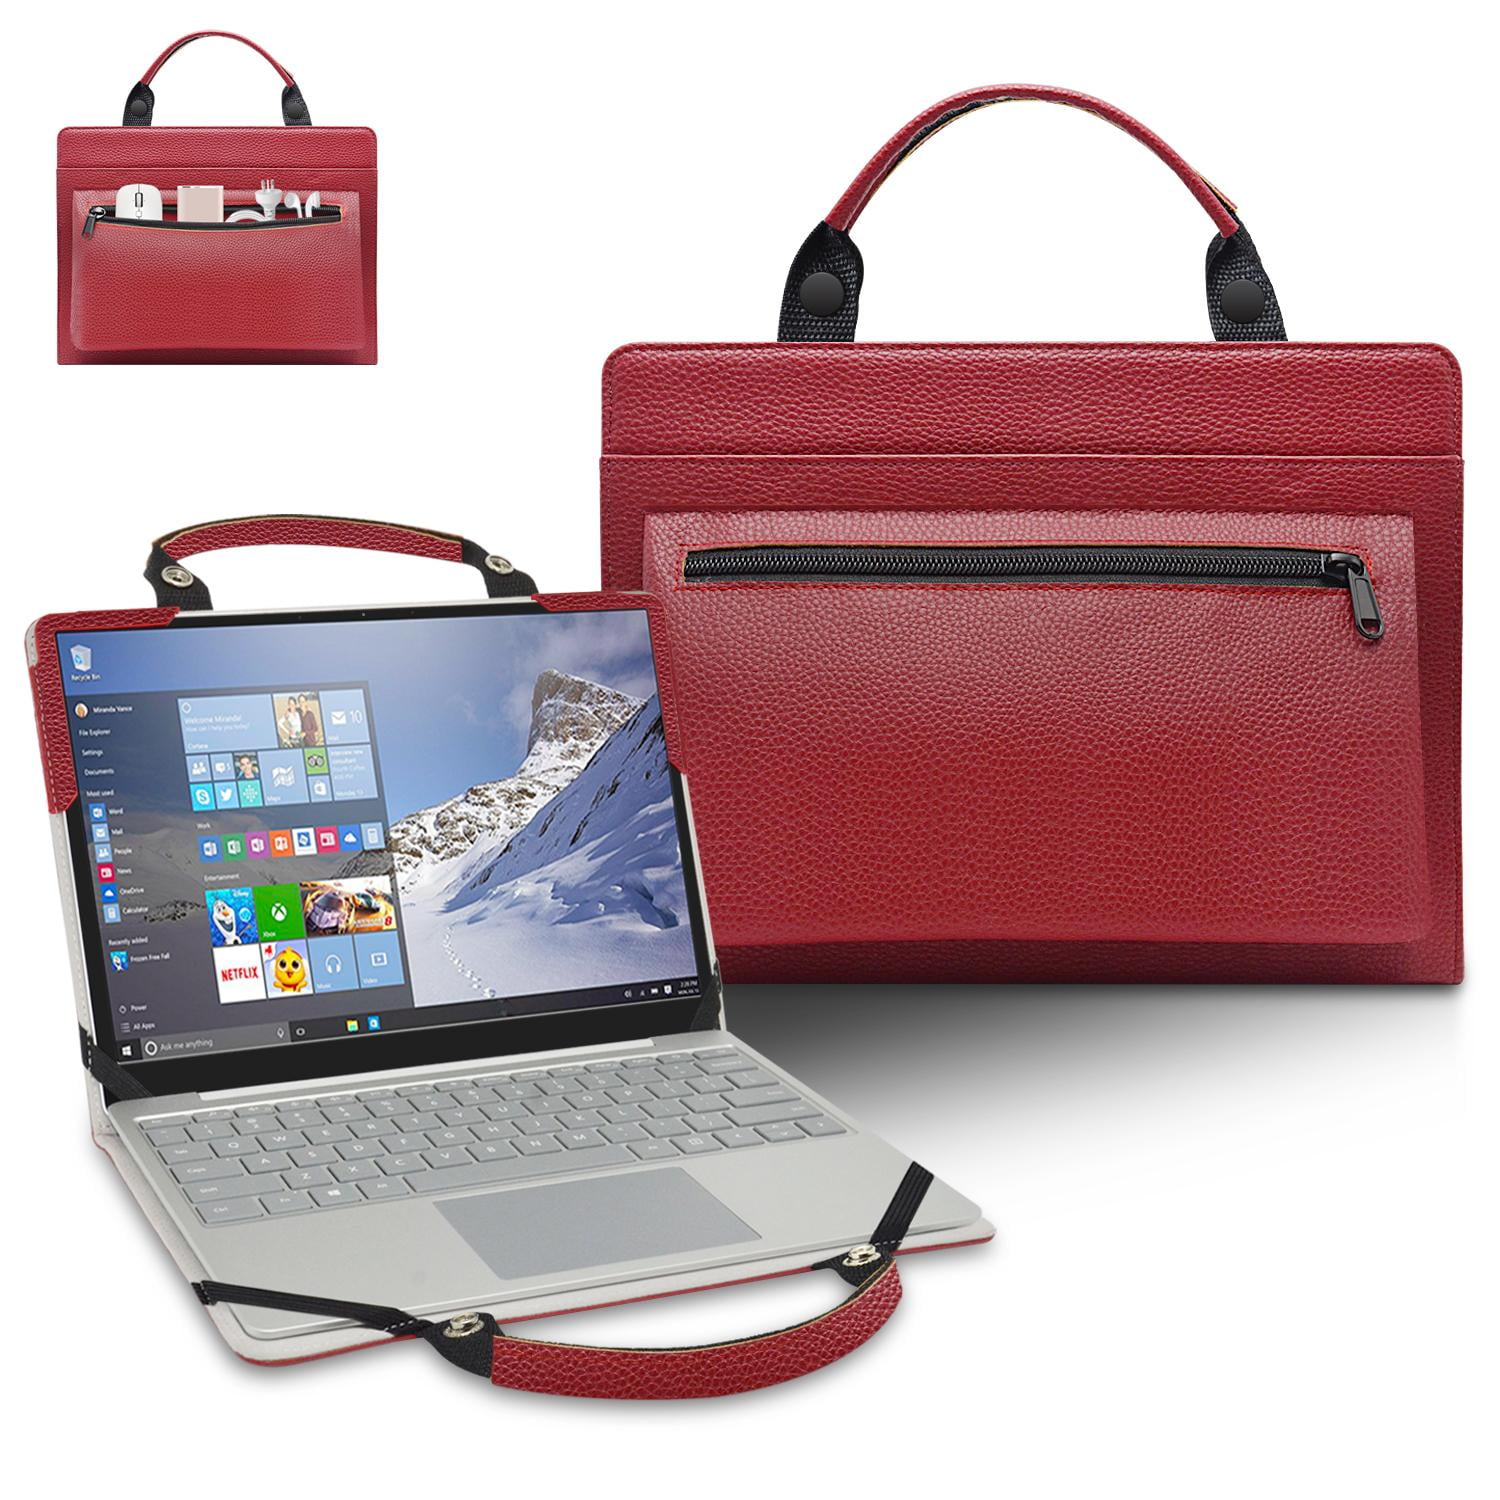 Dargonfly Printed Laptop Shoulder Bag,Laptop case Handbag Business Messenger Bag Briefcase